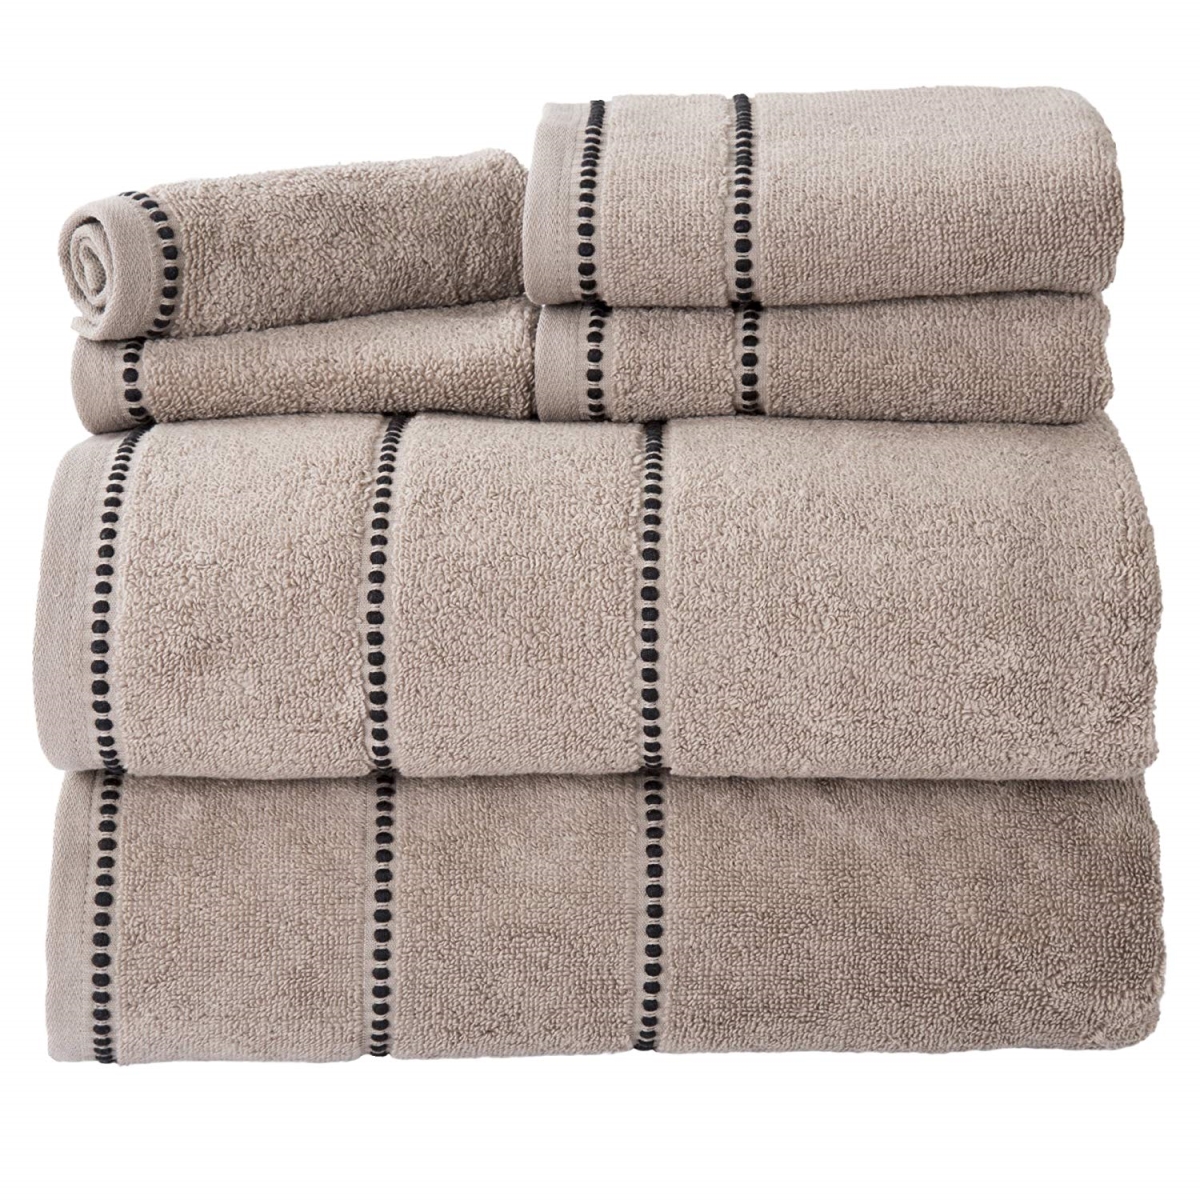 67a-76894 Quick Dry 100 Percent Cotton Zero Twist 6 Piece Towel Set - Taupe